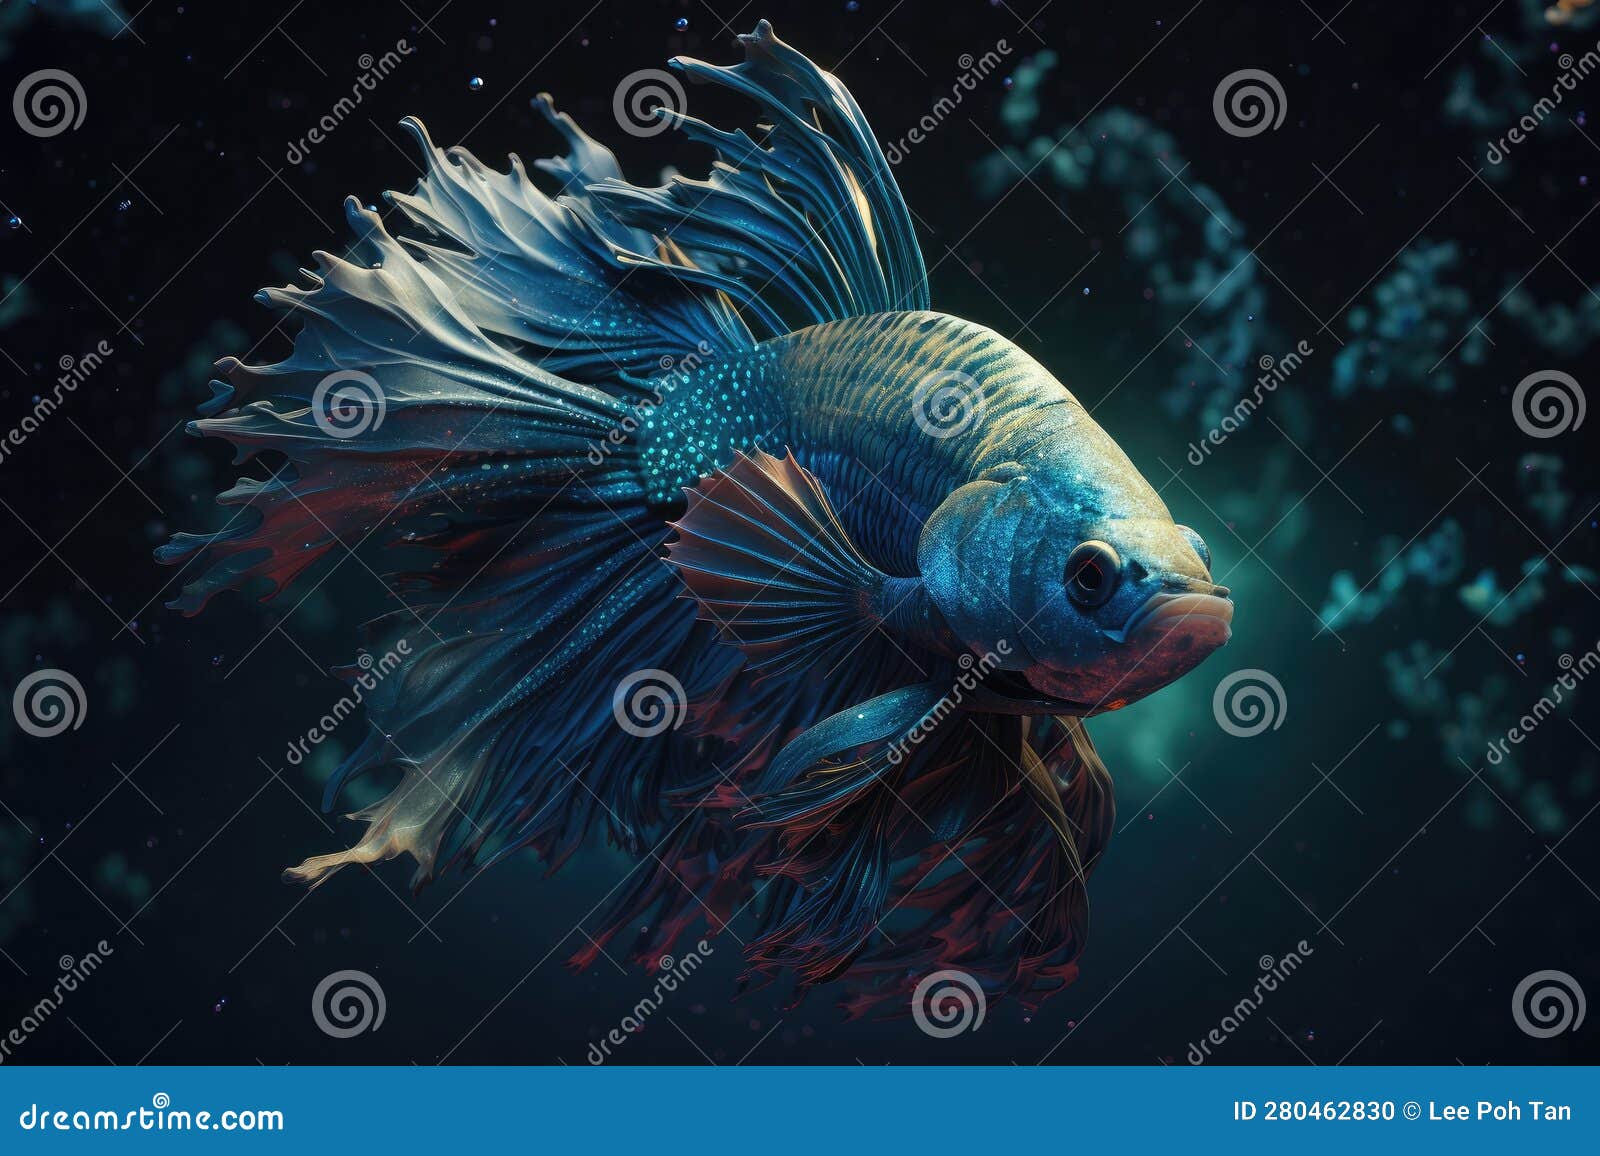 Blue Betta Fish in the Dark Environment Water Stock Illustration -  Illustration of ocean, betta: 280462830